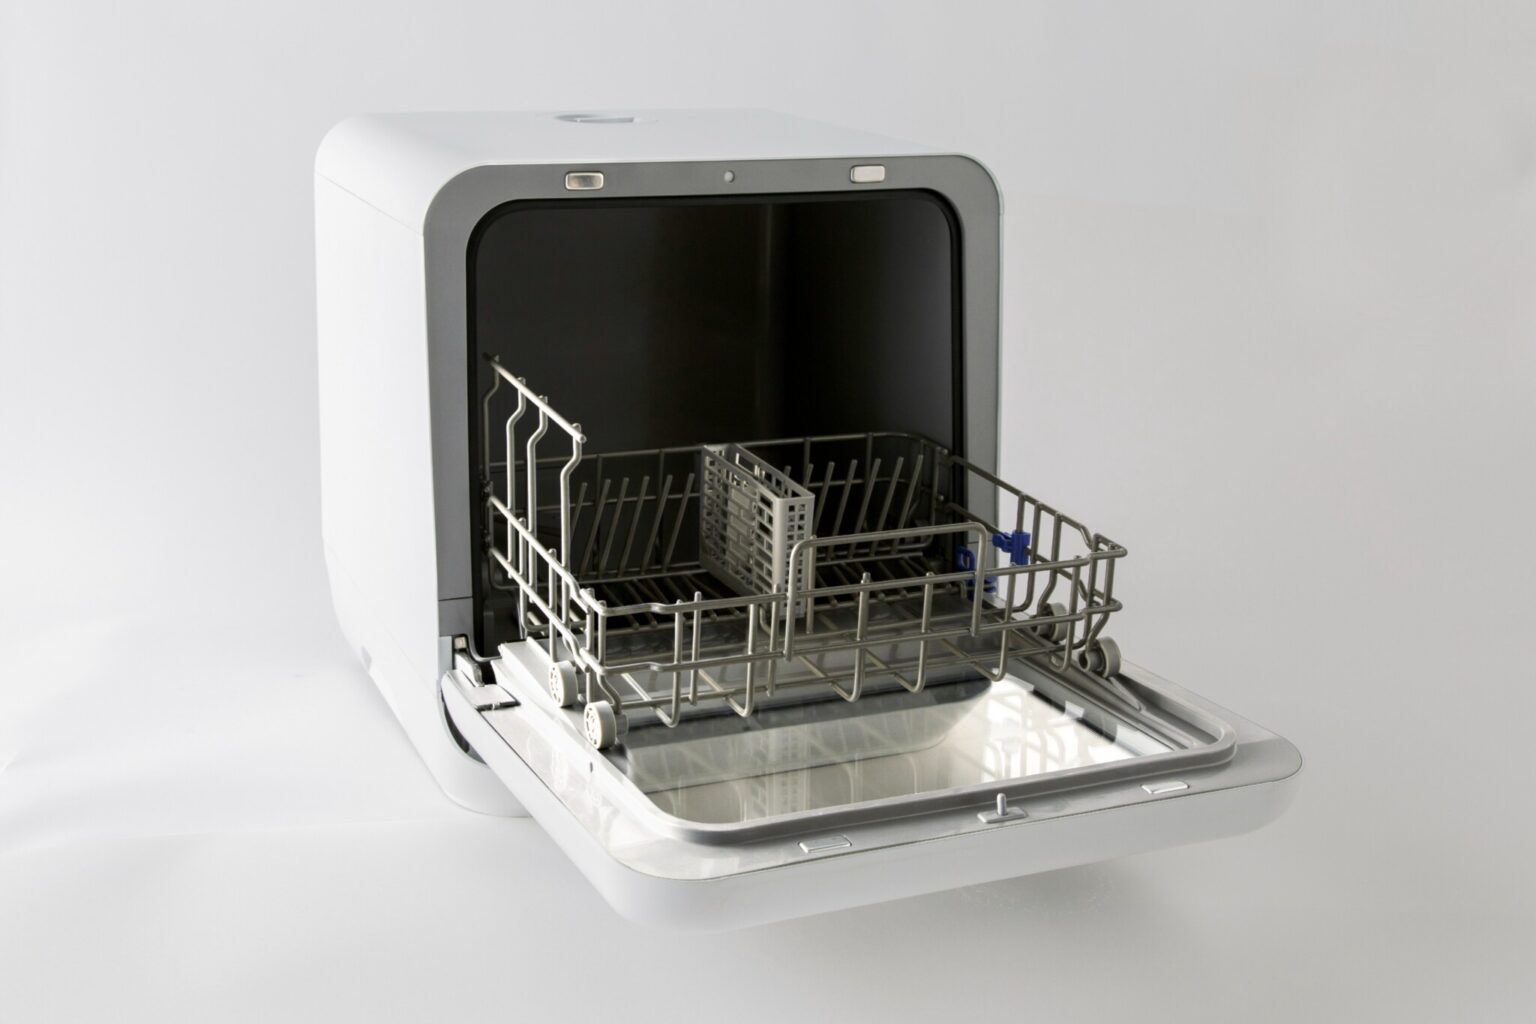 〈シロカ〉の食器洗い乾燥機 SS-M151